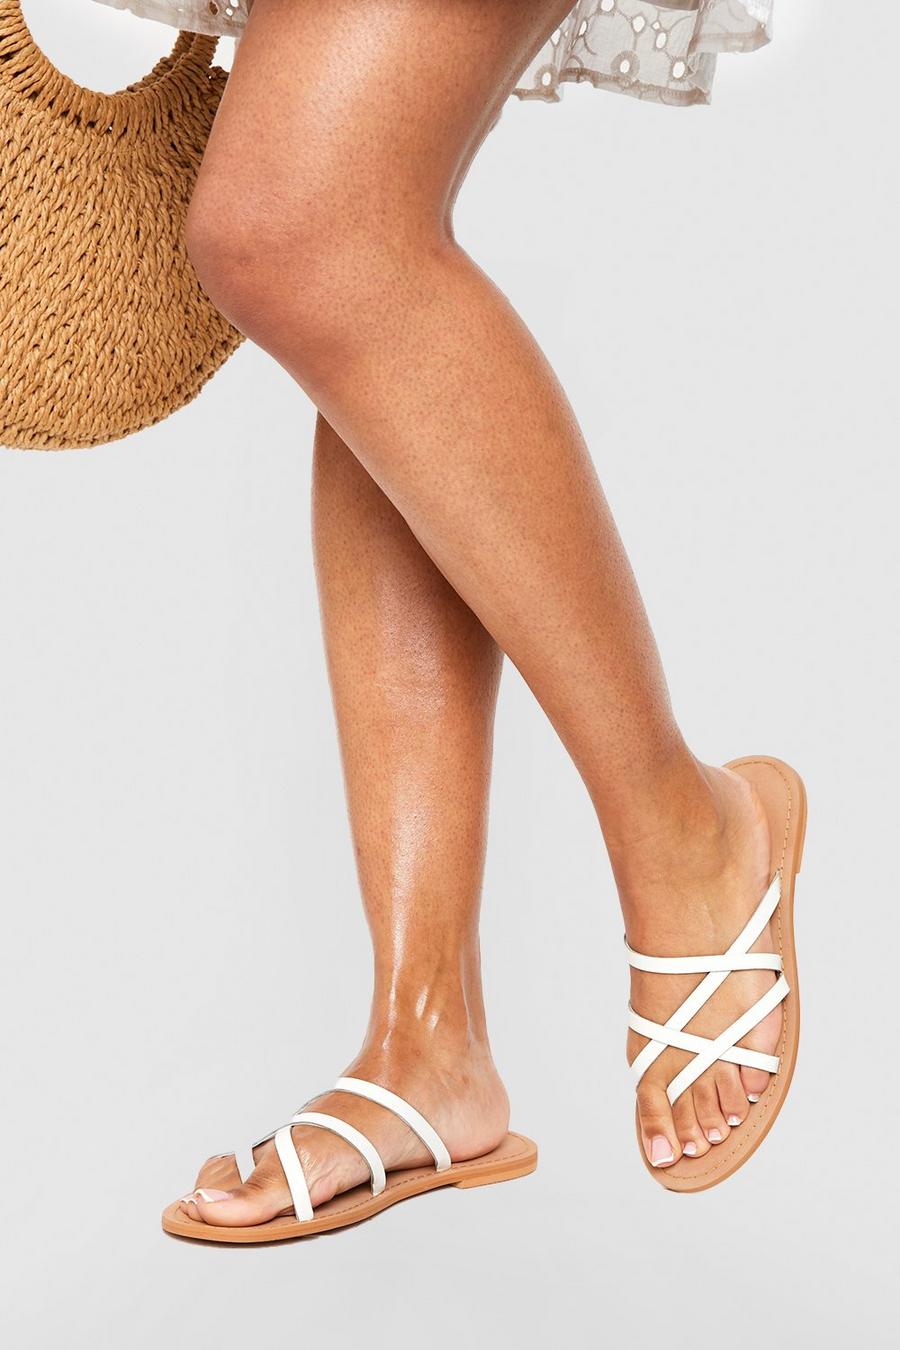 Sandali a calzata ampia in pelle con dettagli incrociati e laccetti, White bianco